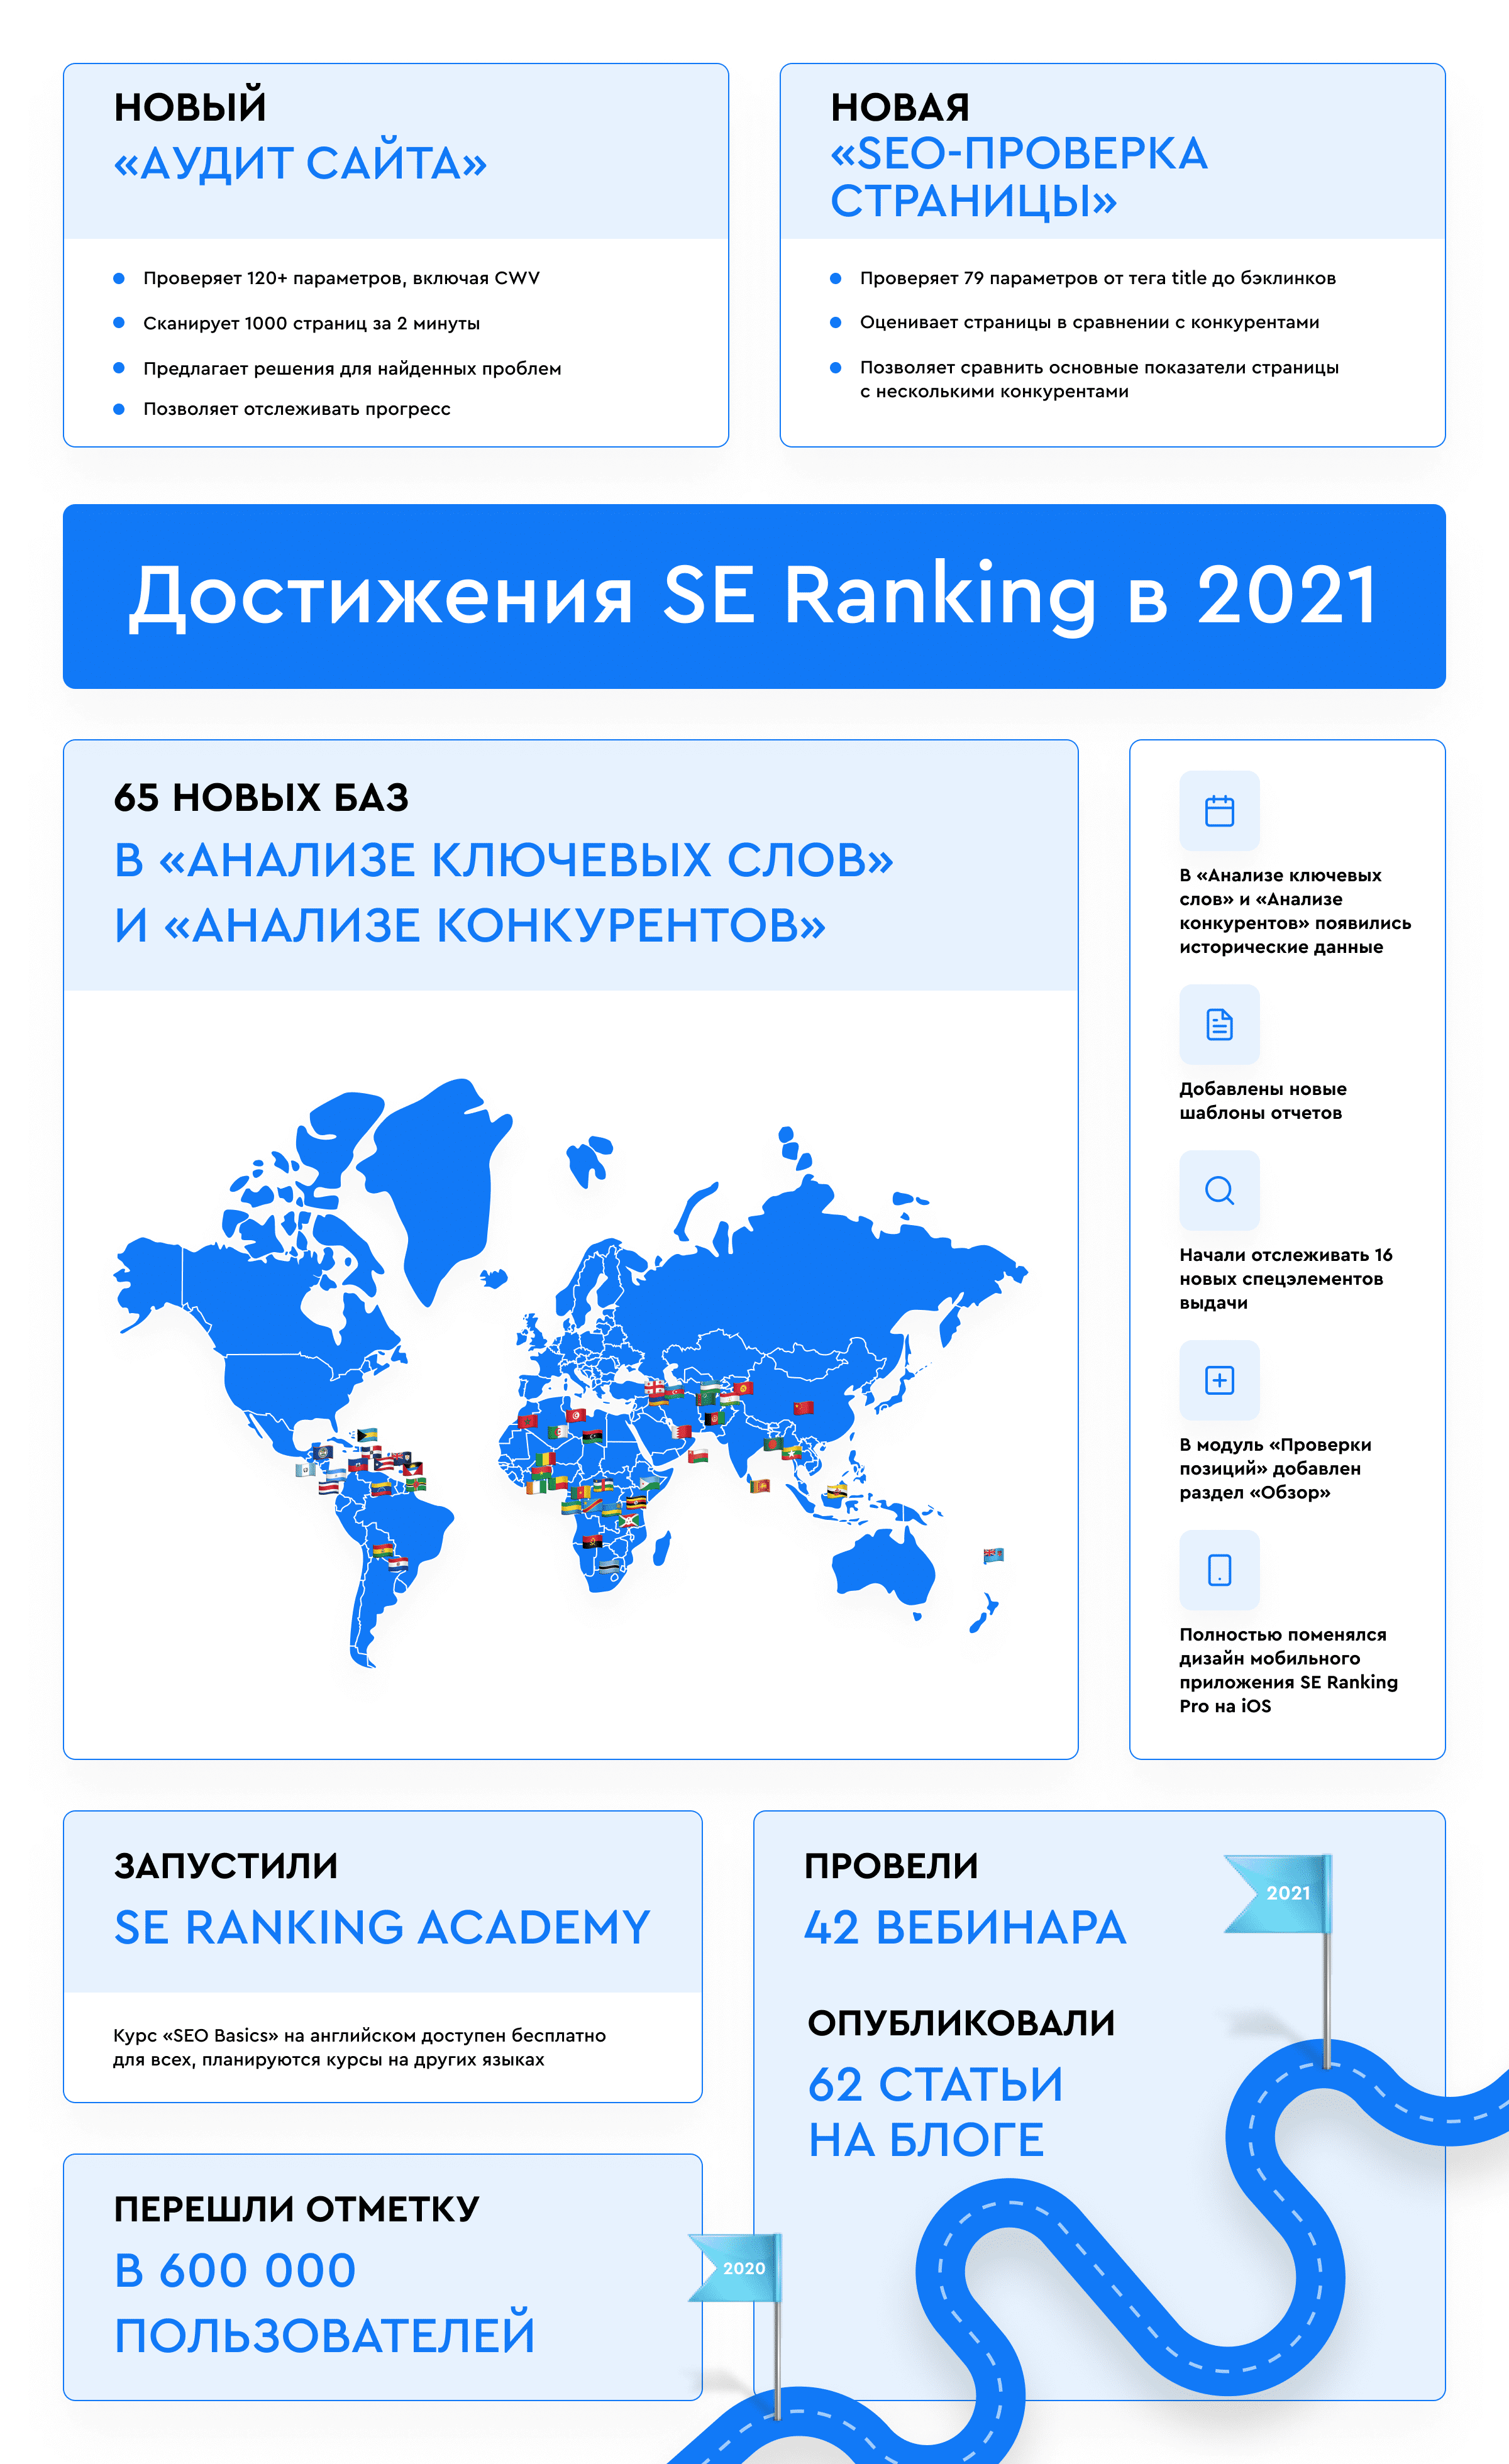 Достижения рейтинга SE в 2021 году